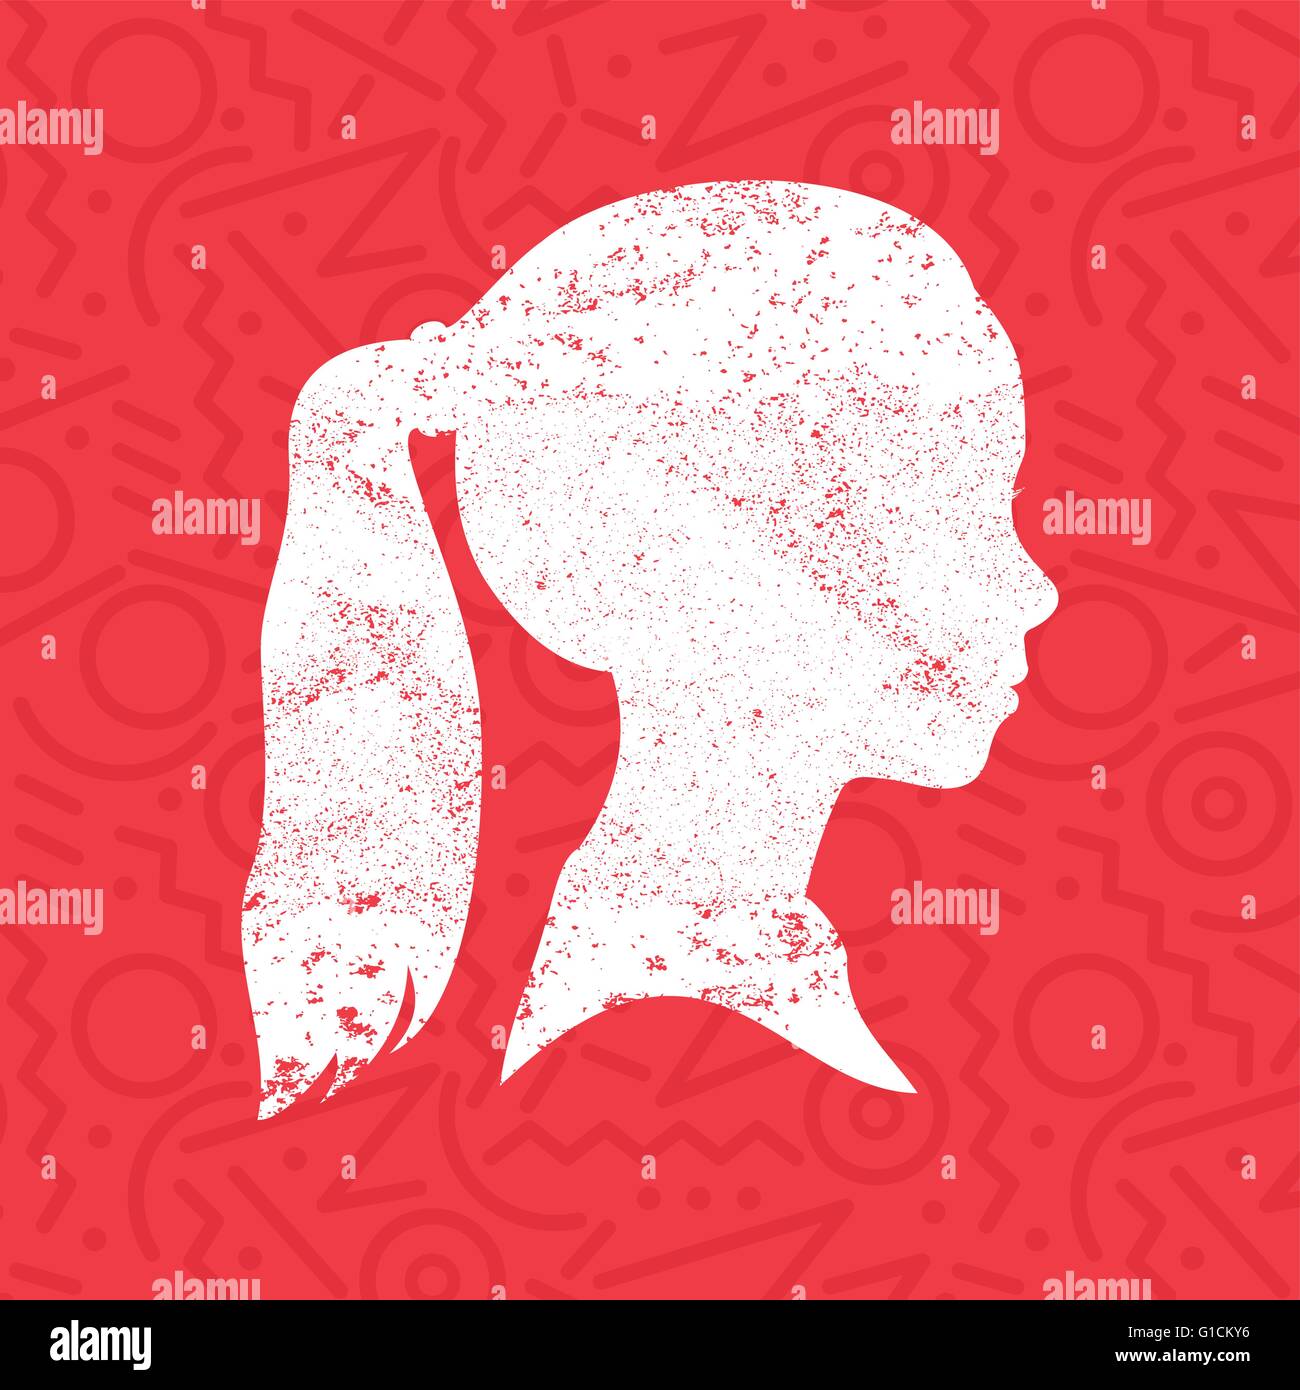 Petite fille silhouette visage avec queue de hairstyle dans texture grunge peindre sur fond rouge, couleur de la tête pour enfants Illustration de Vecteur